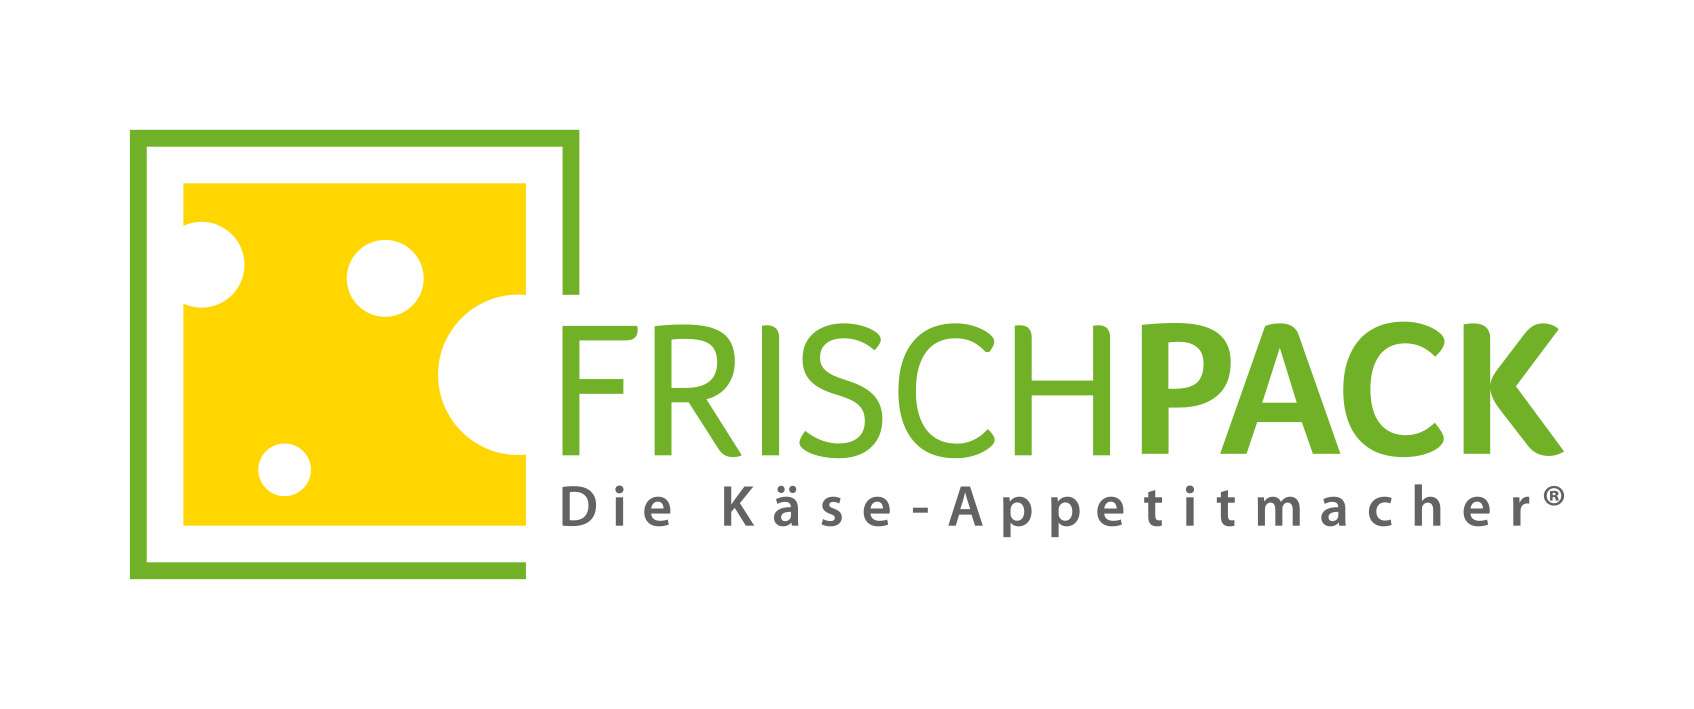 Frischpack Partner der RS for business GmbH